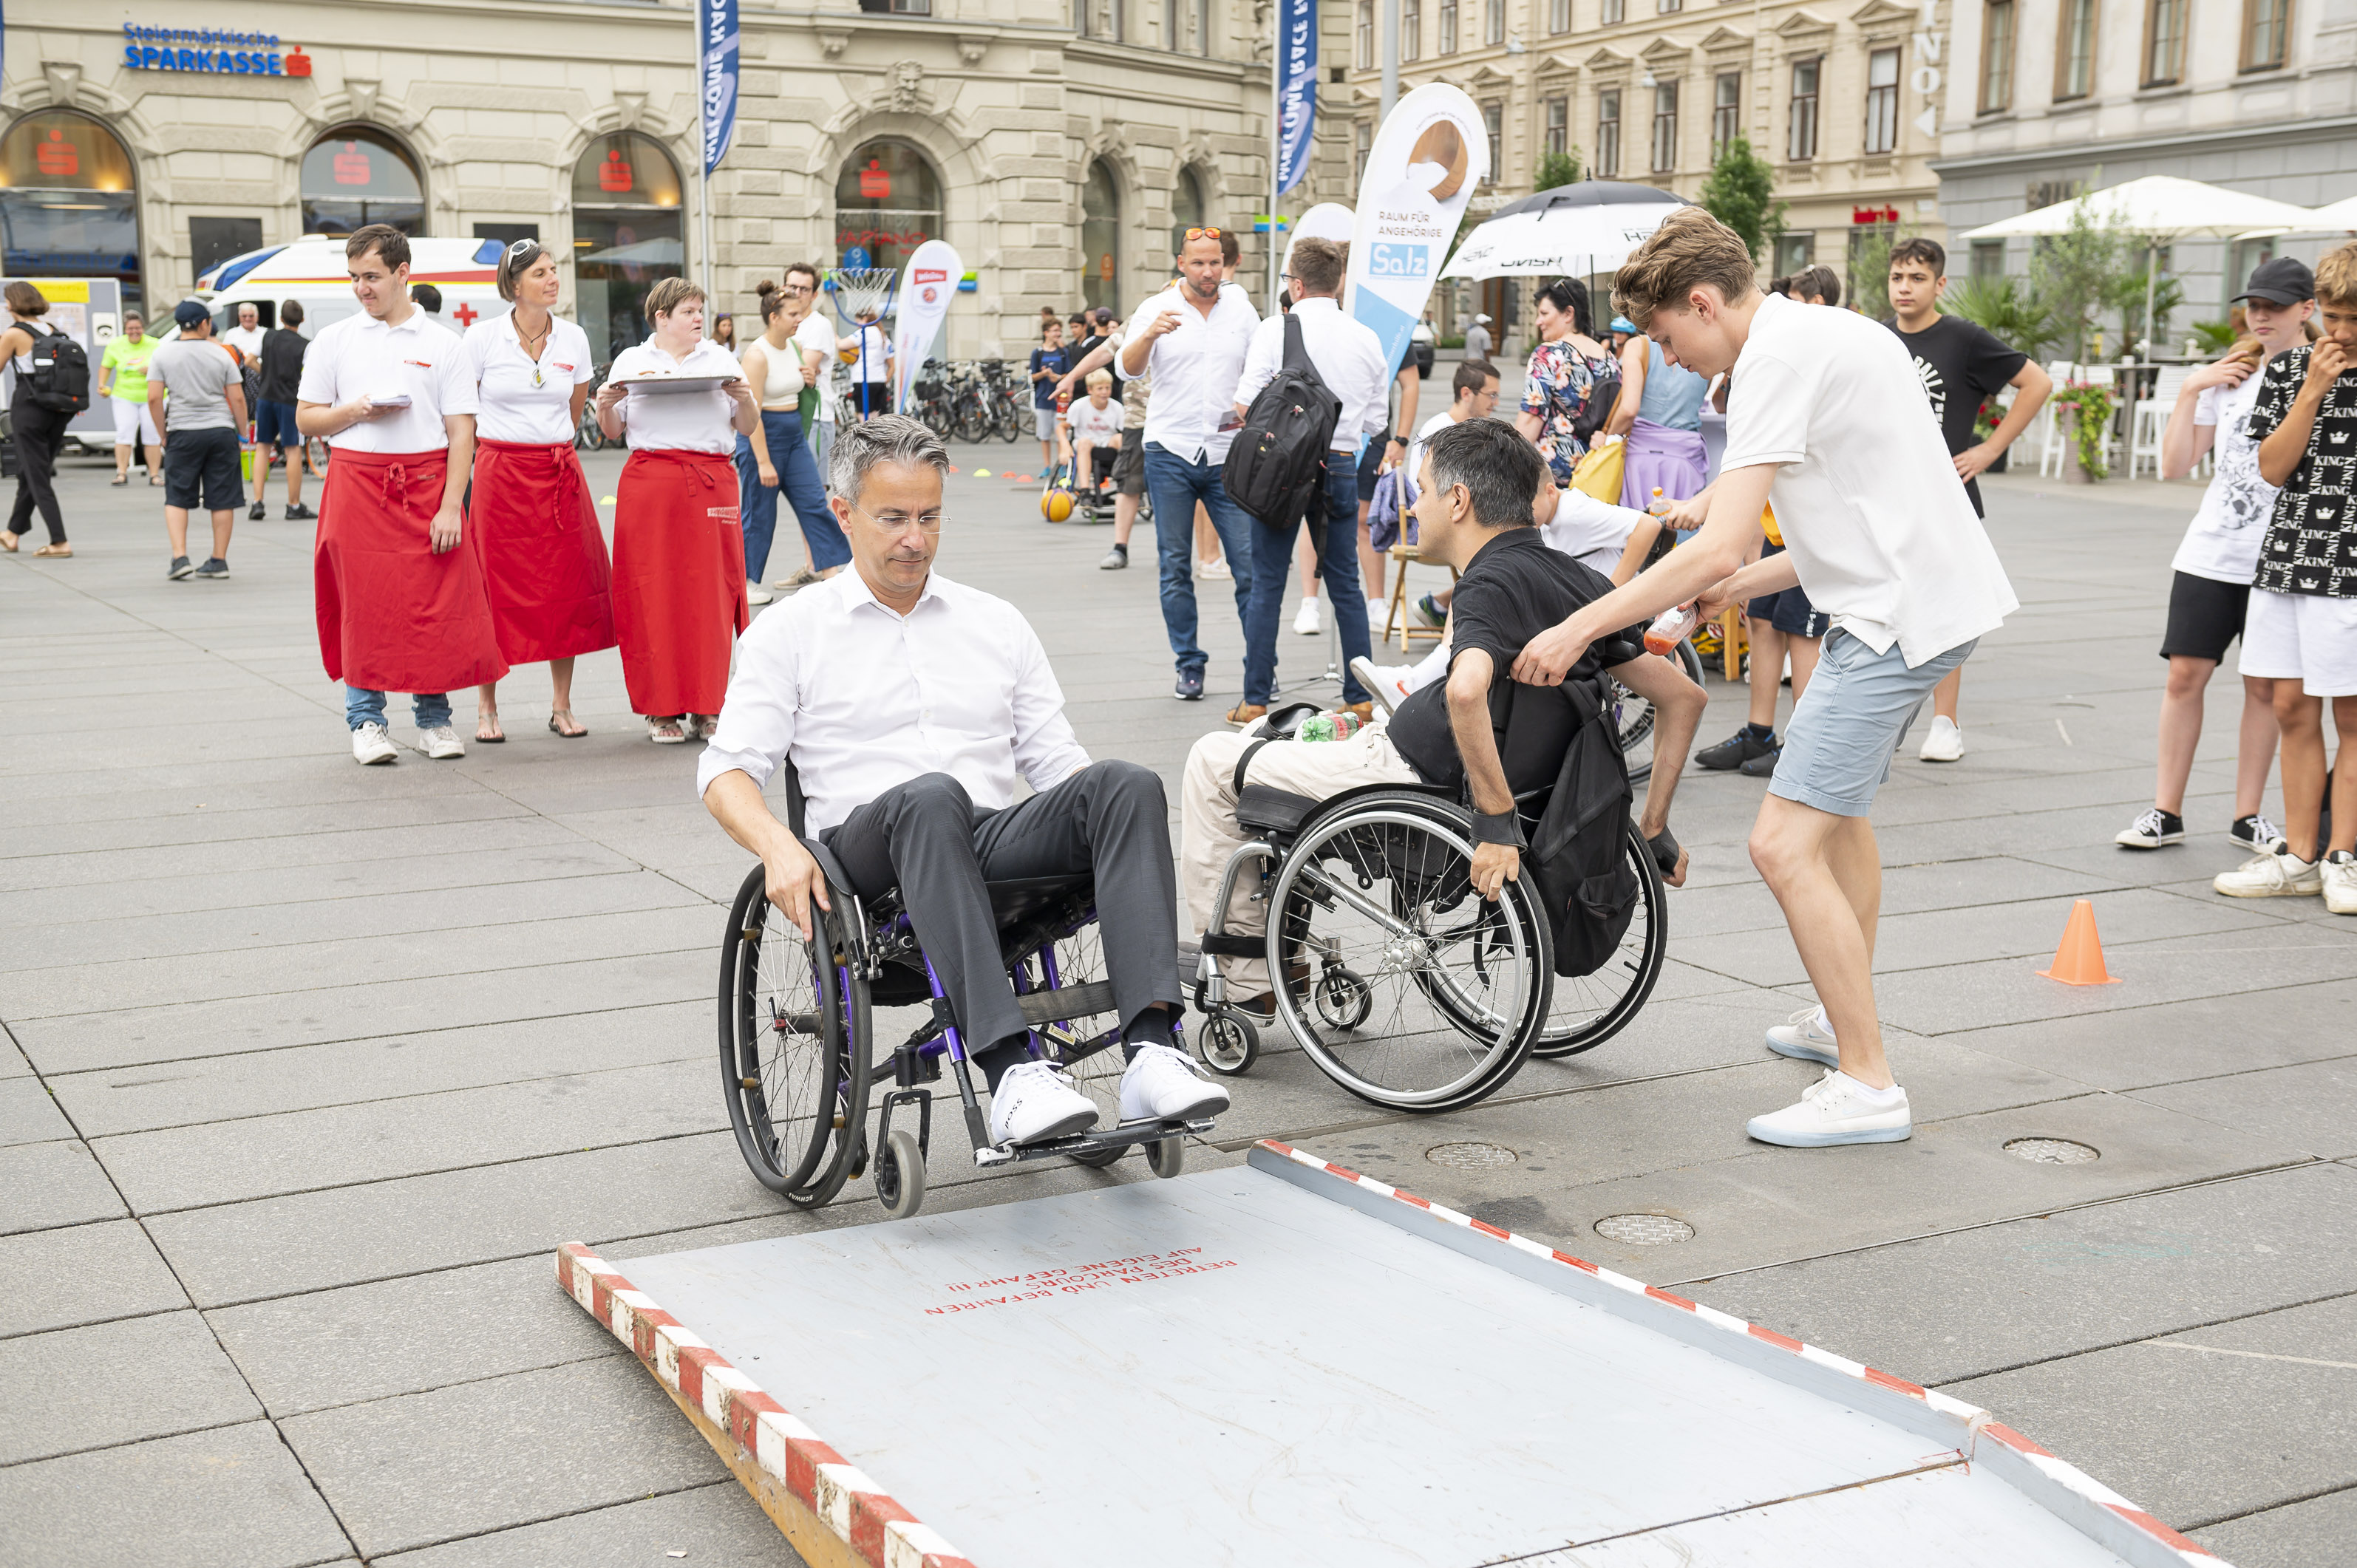 Woche der Inklusion: Rollstuhl-Parcours am Grazer Hauptplatz